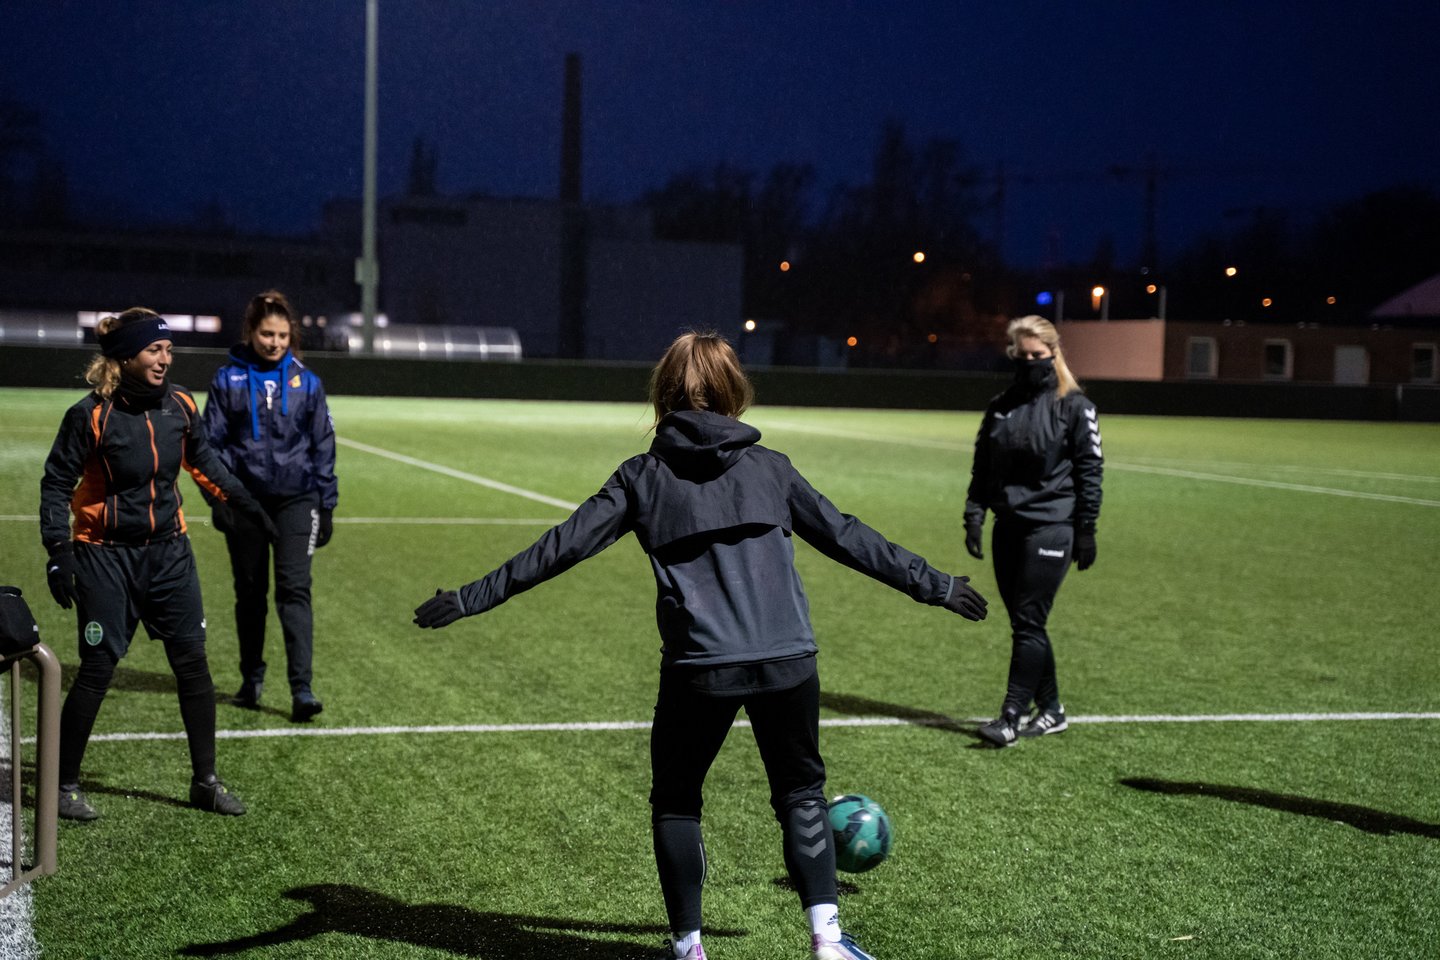 Futbolas gali būti puiki priemonė mergaitėms vystytis fiziškai ir emociniu požiūriu, todėl svarbu, kad visos besidominčios mergaitės turėtų galimybę pasirinkti šią sporto šaką.